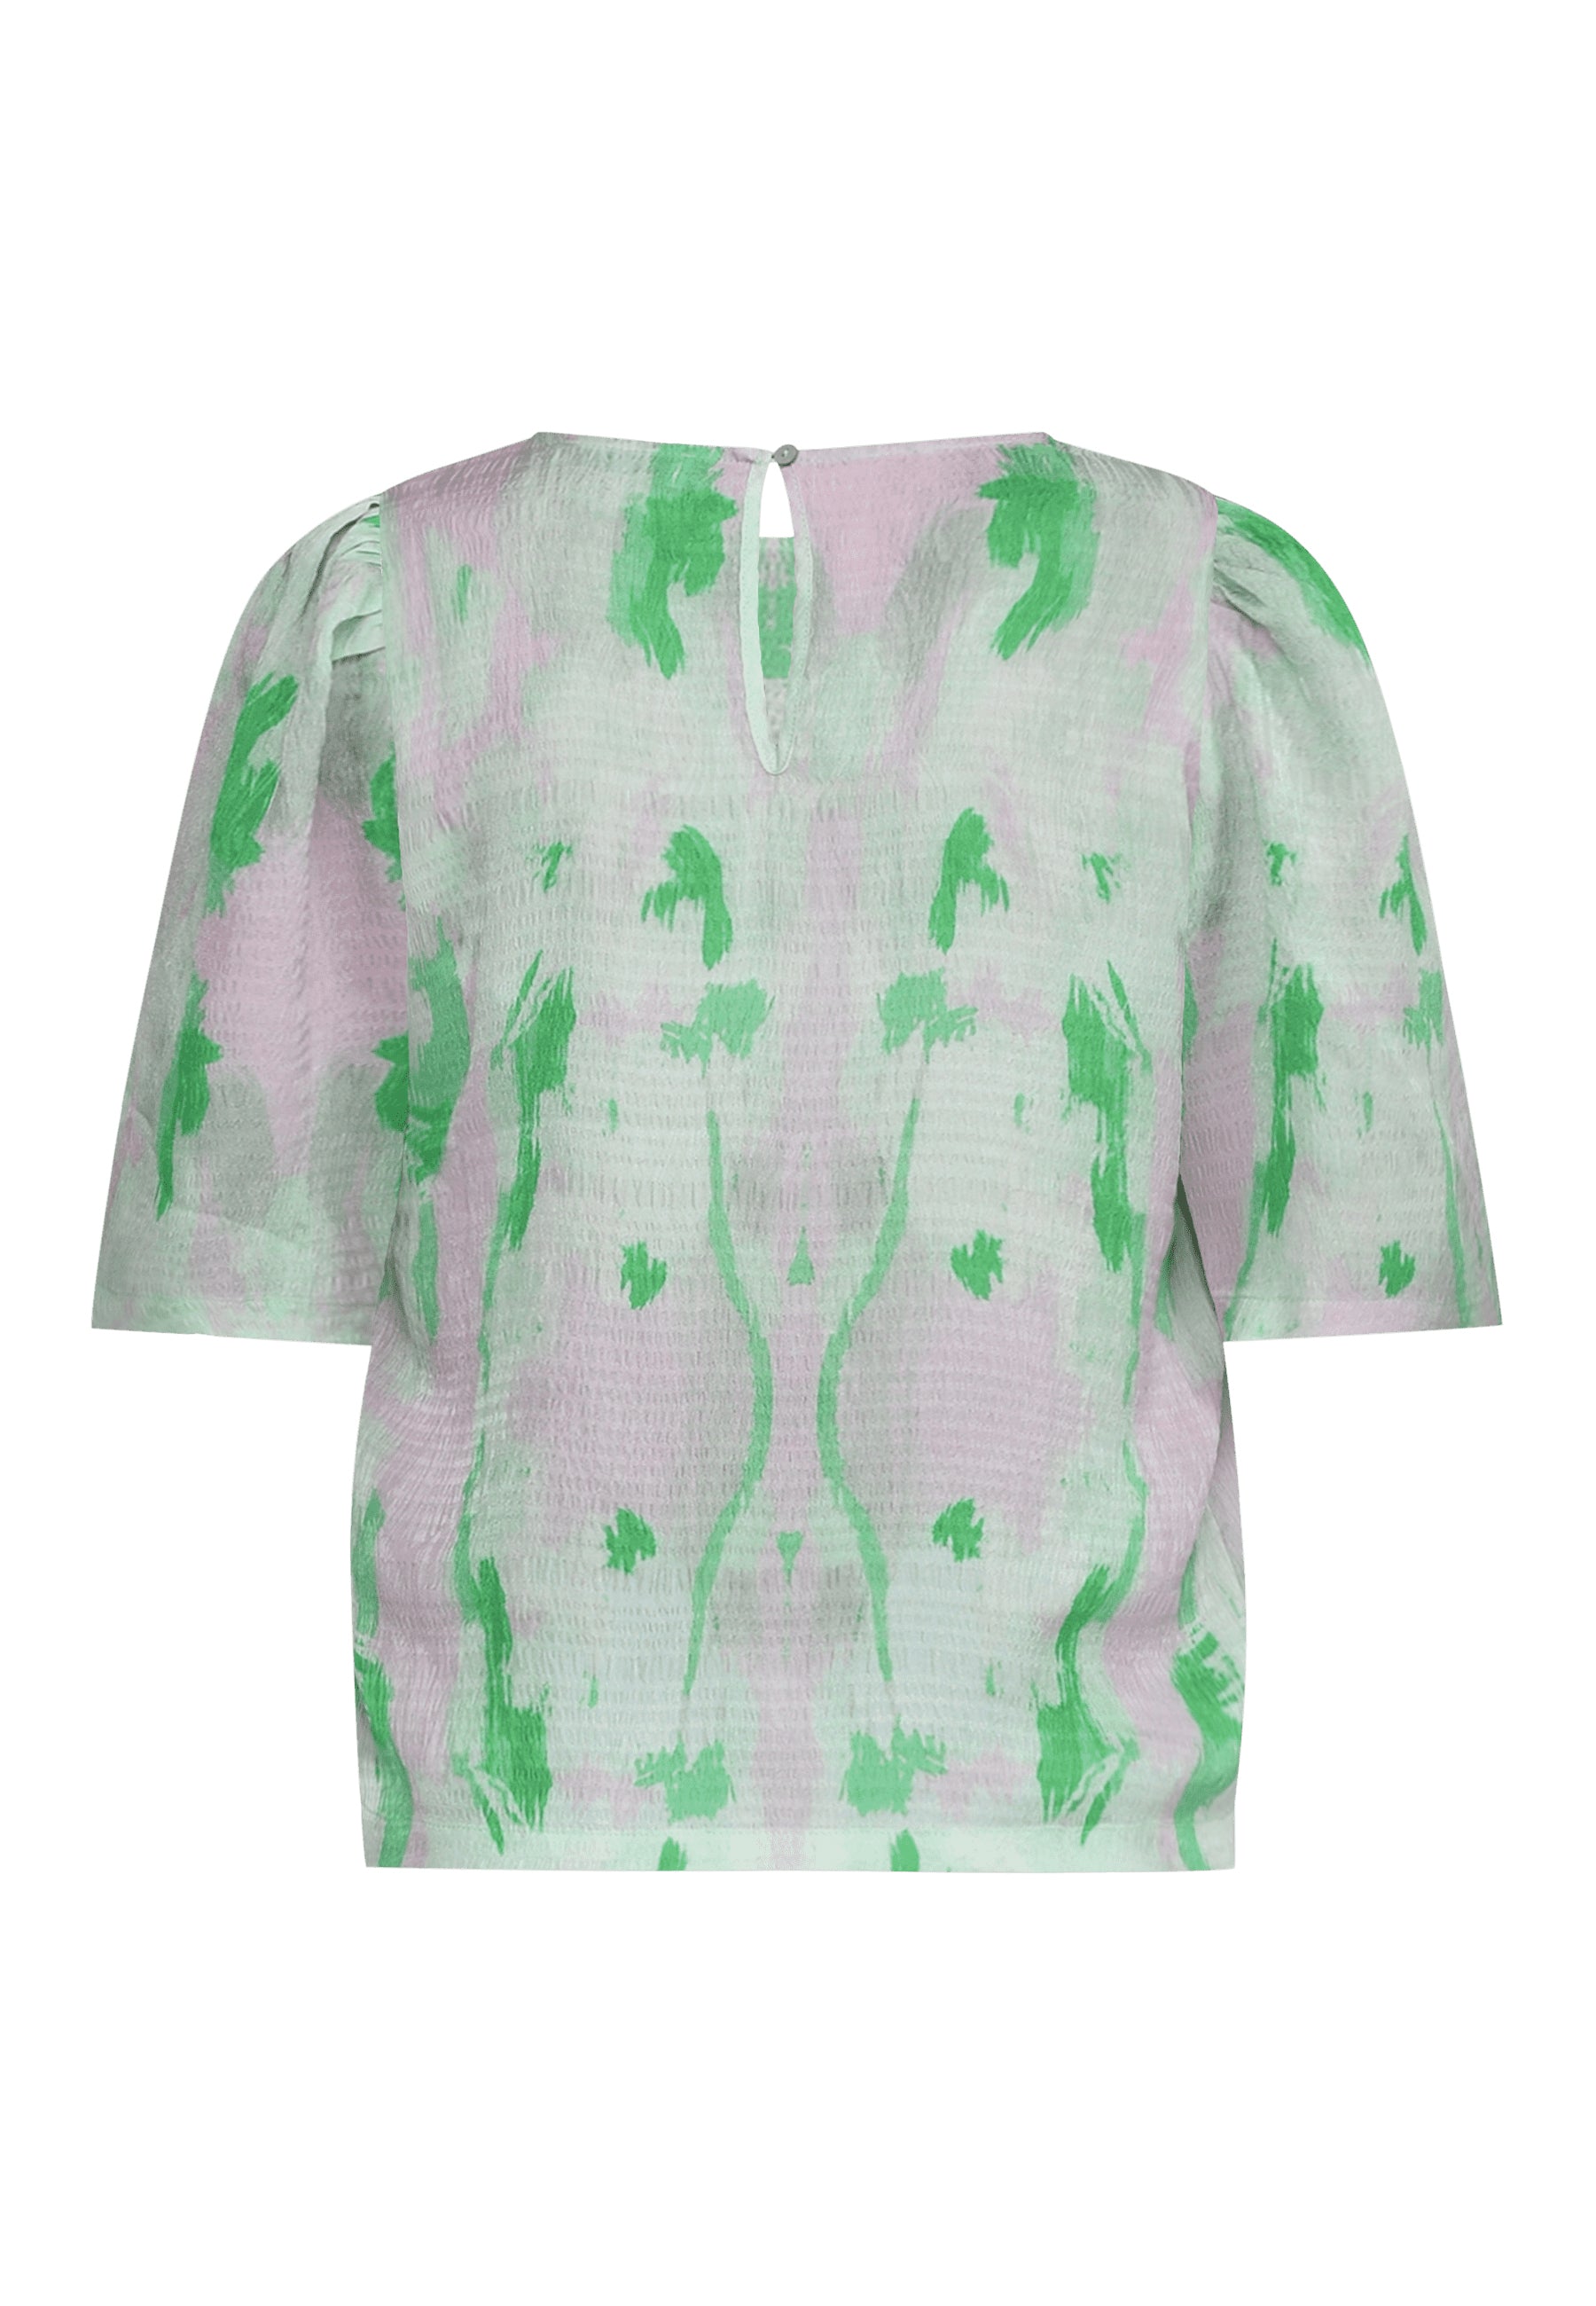 Bluse med grøn og pink print, kort ærmer, bagfra